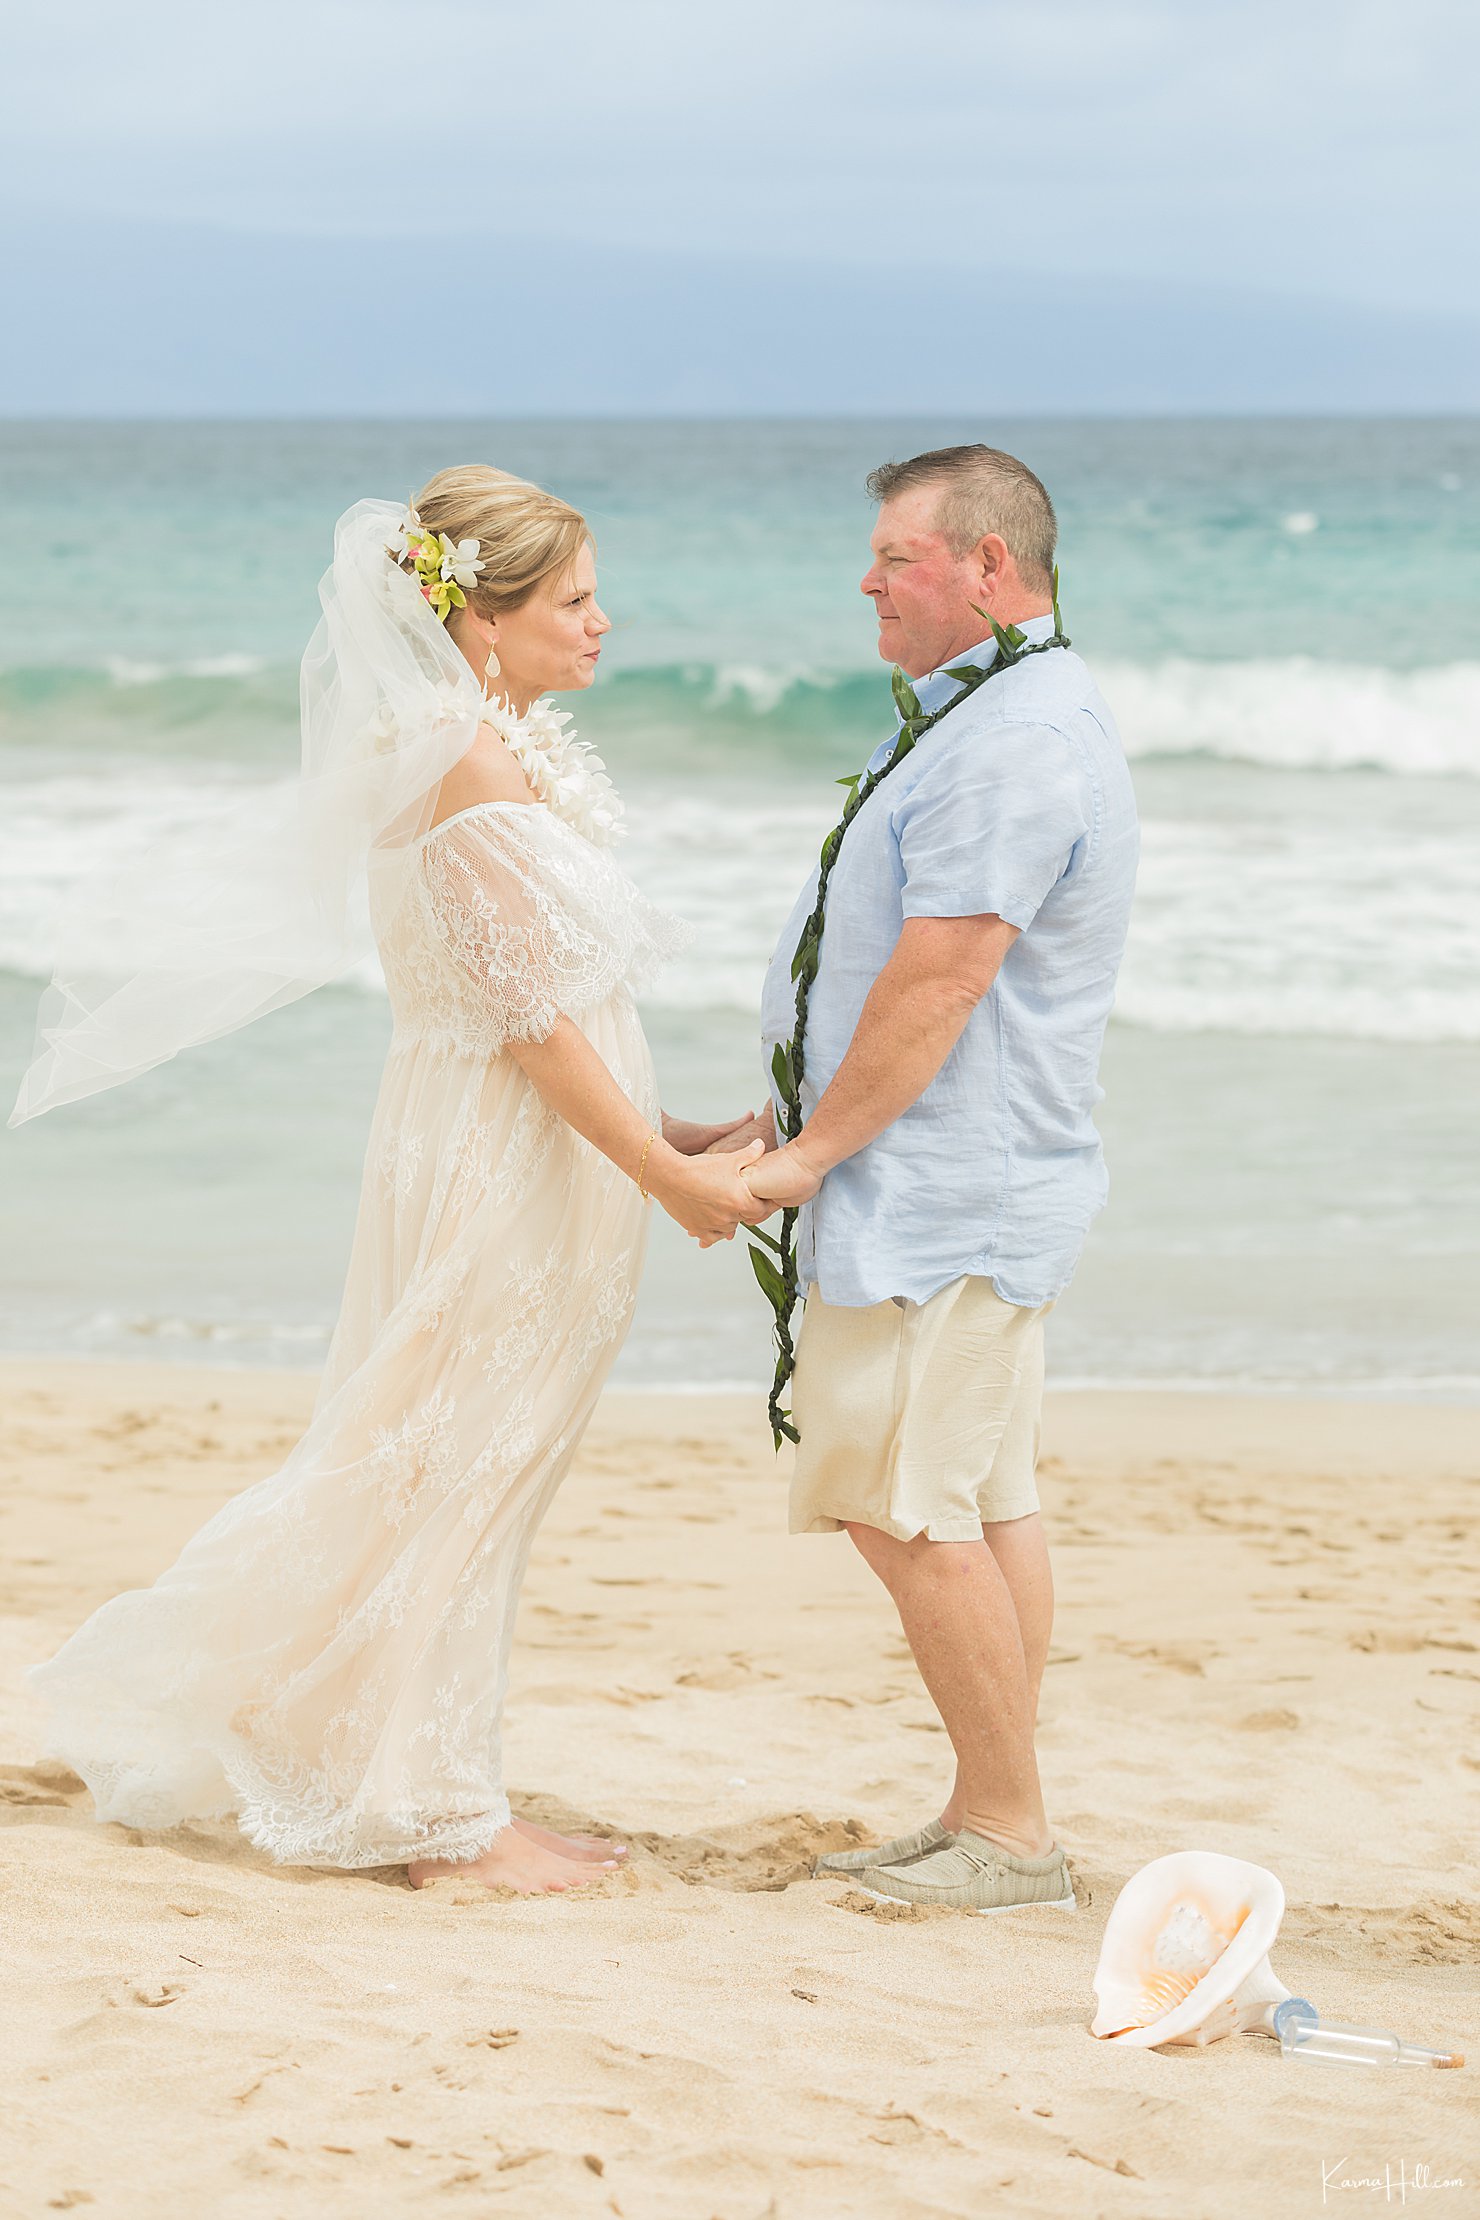 photos of Maui wedding ceremony